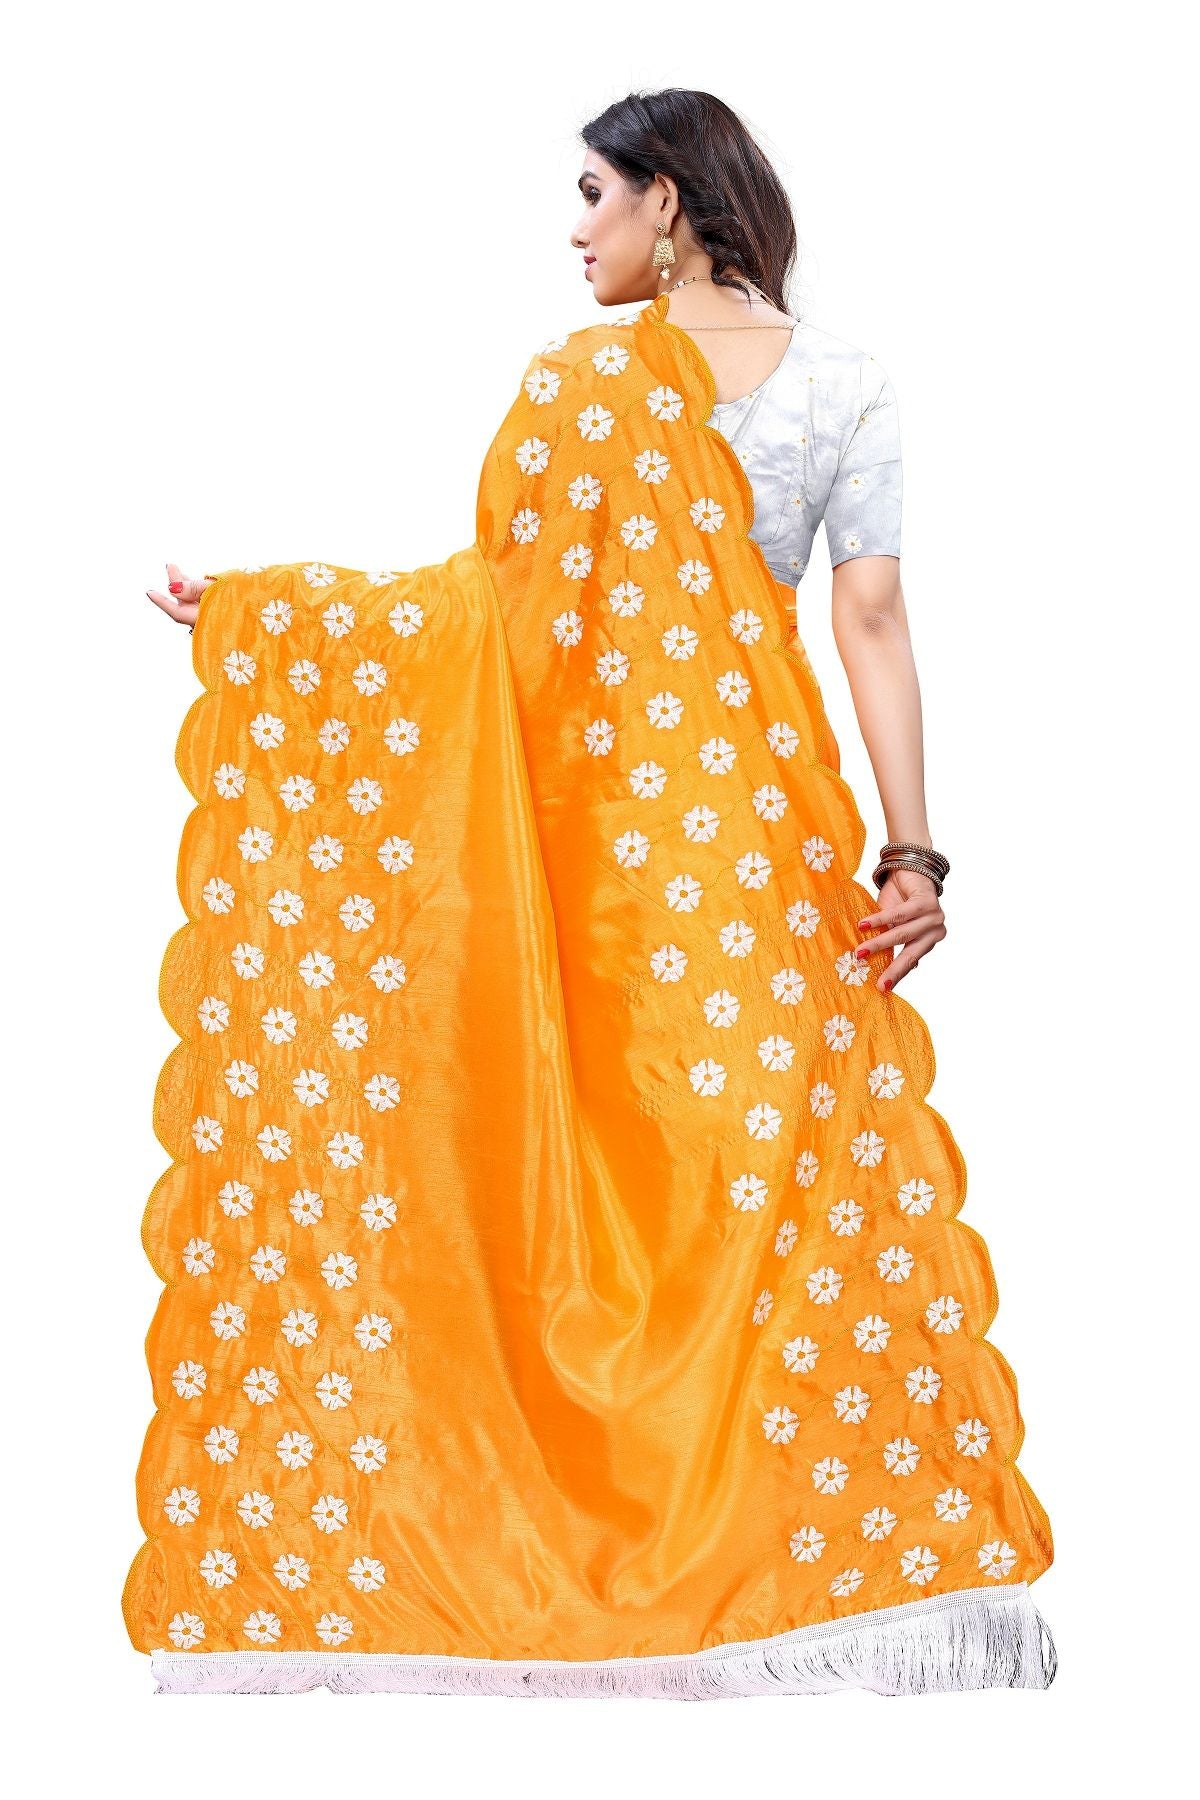 Women's Vamika Zoya Silk Embroidered Yellow Saree-Rakhi Mustard - Vamika